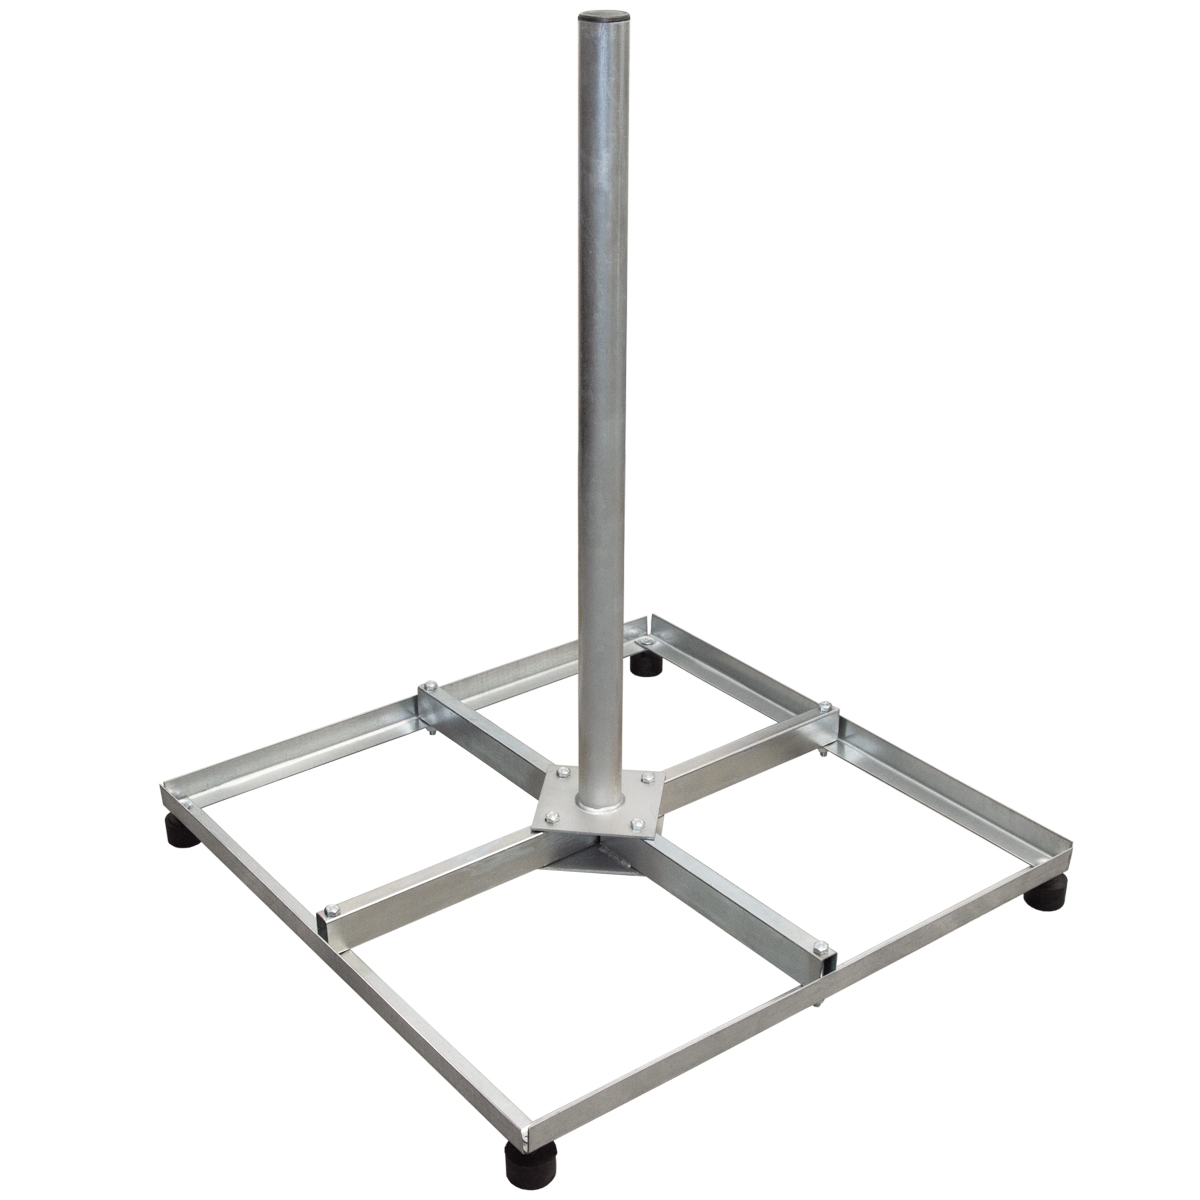 PREMIUMX Balkonständer 4x 30x30cm Stahl Balkonständer SAT Flachdachständer Flachdachständer Mast / / Terrassenständer, Silber